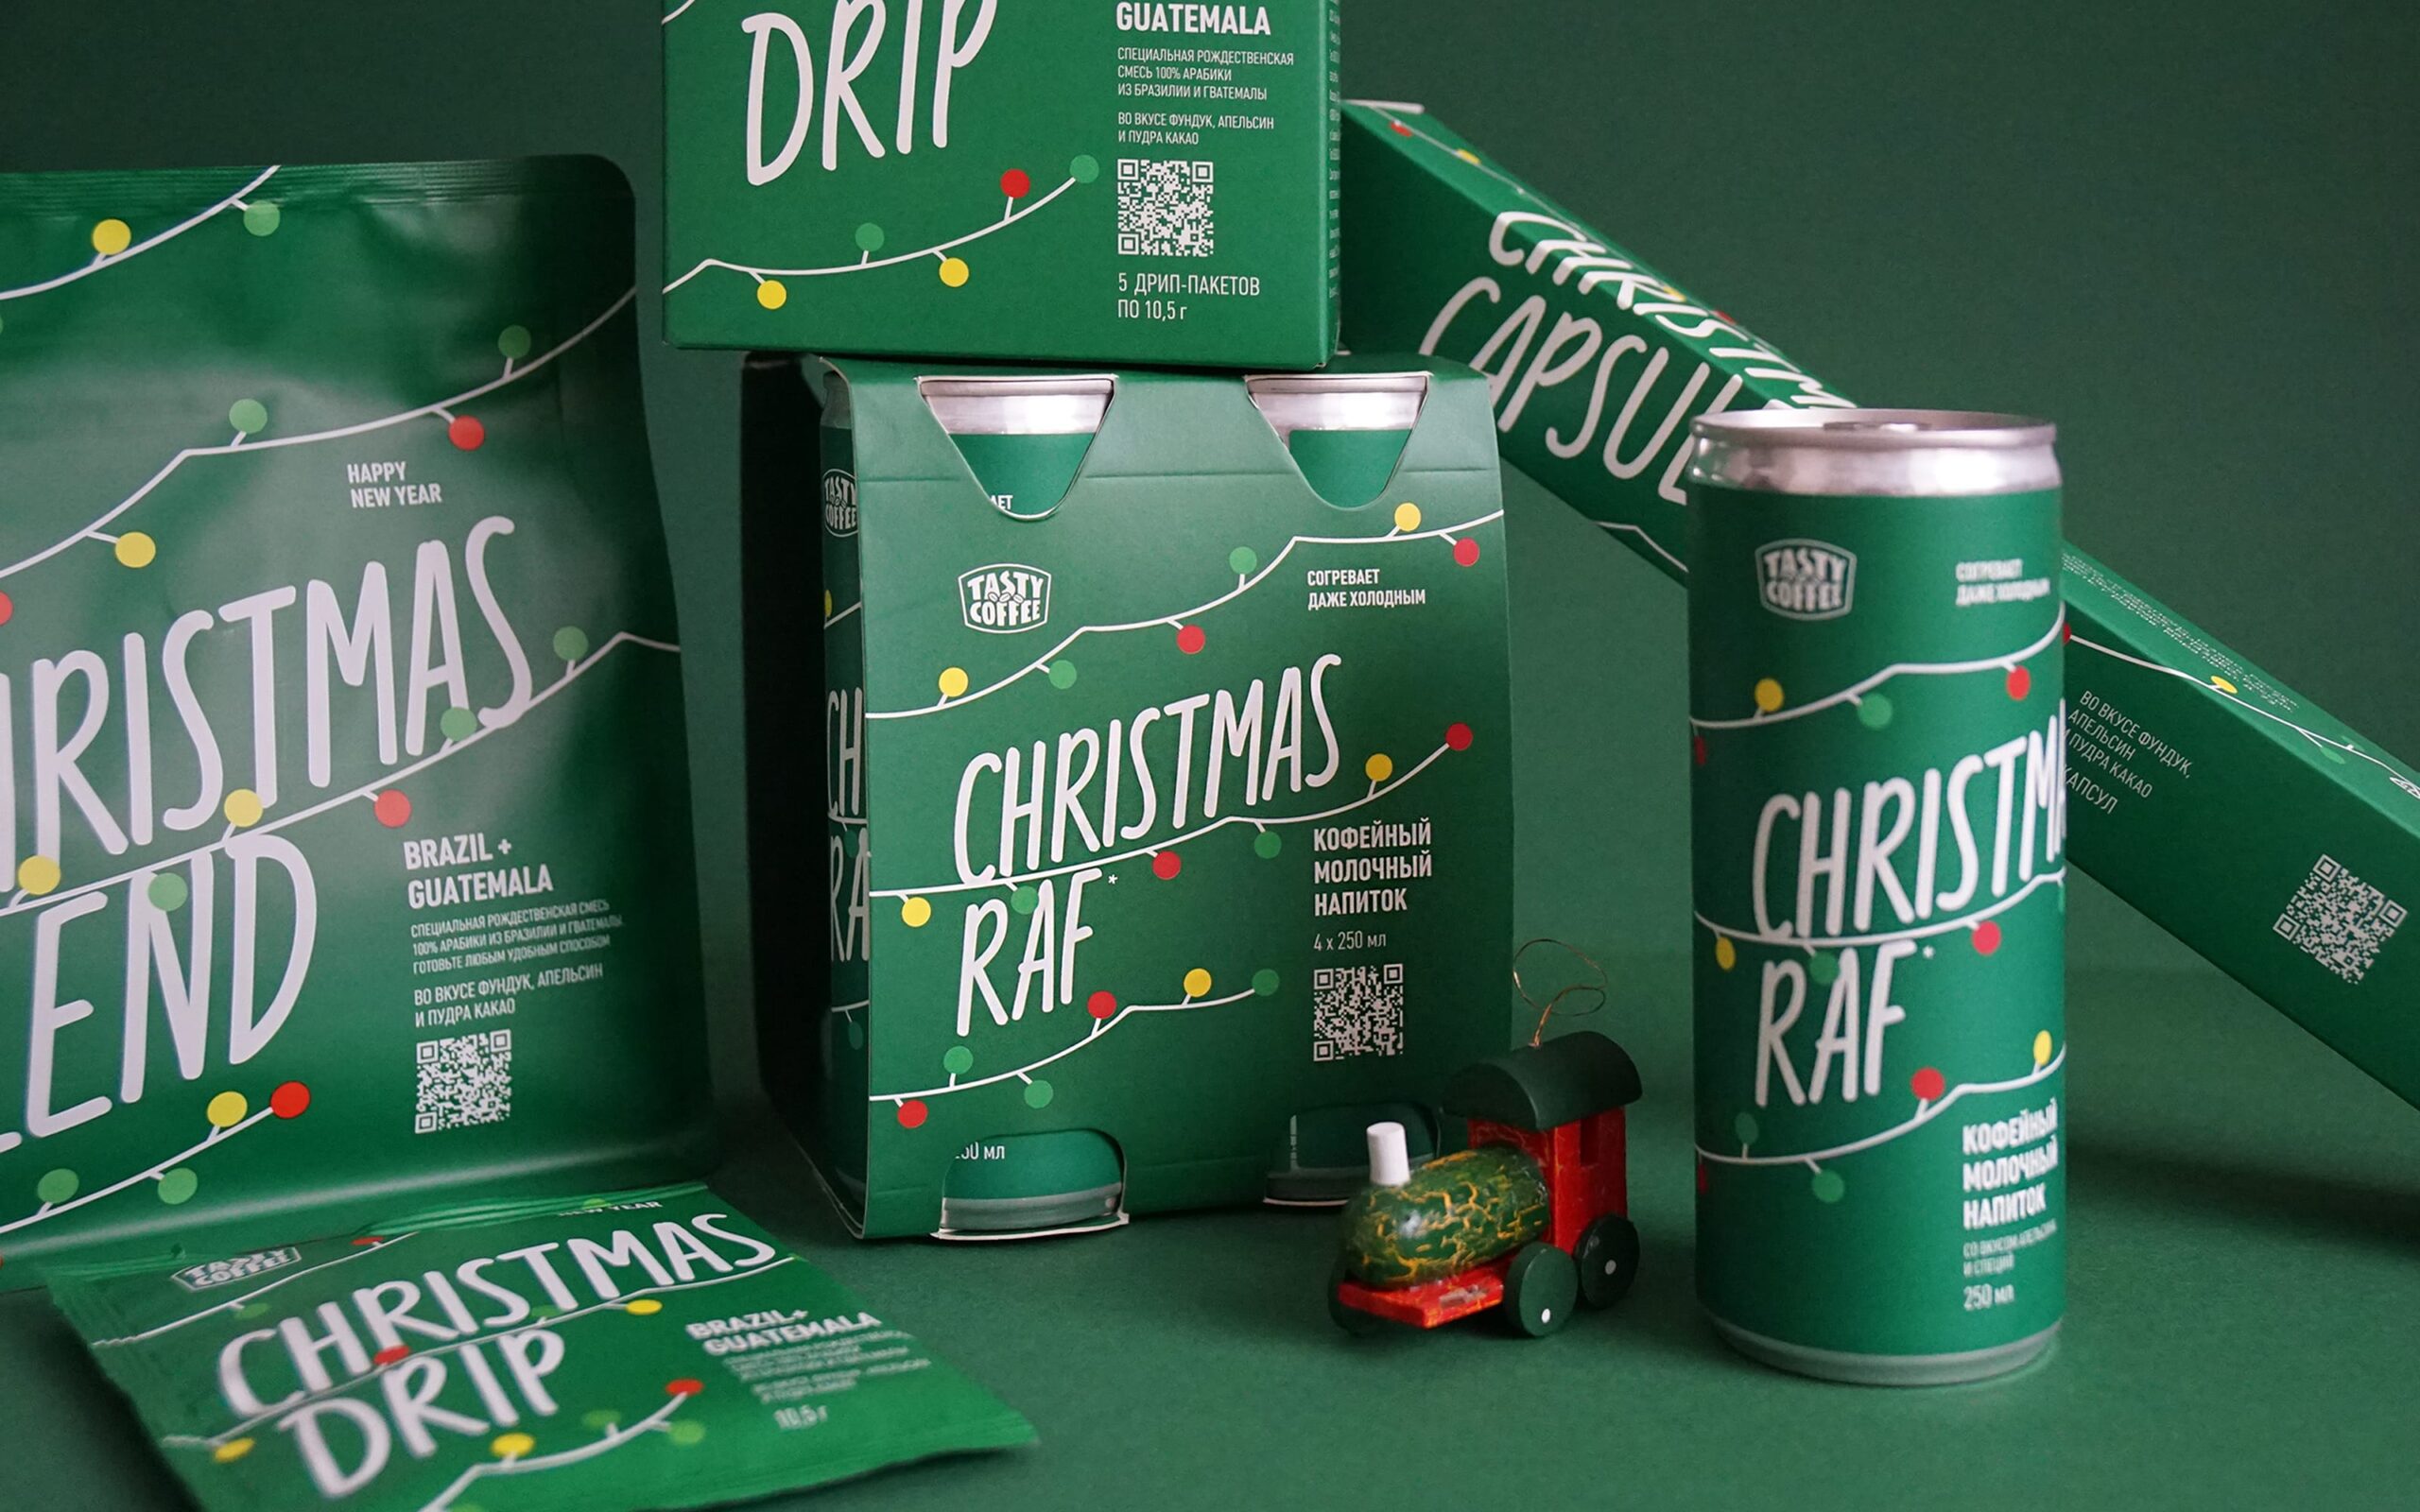 Дизайн линейки упаковки рождественской смеси Tasty Coffee